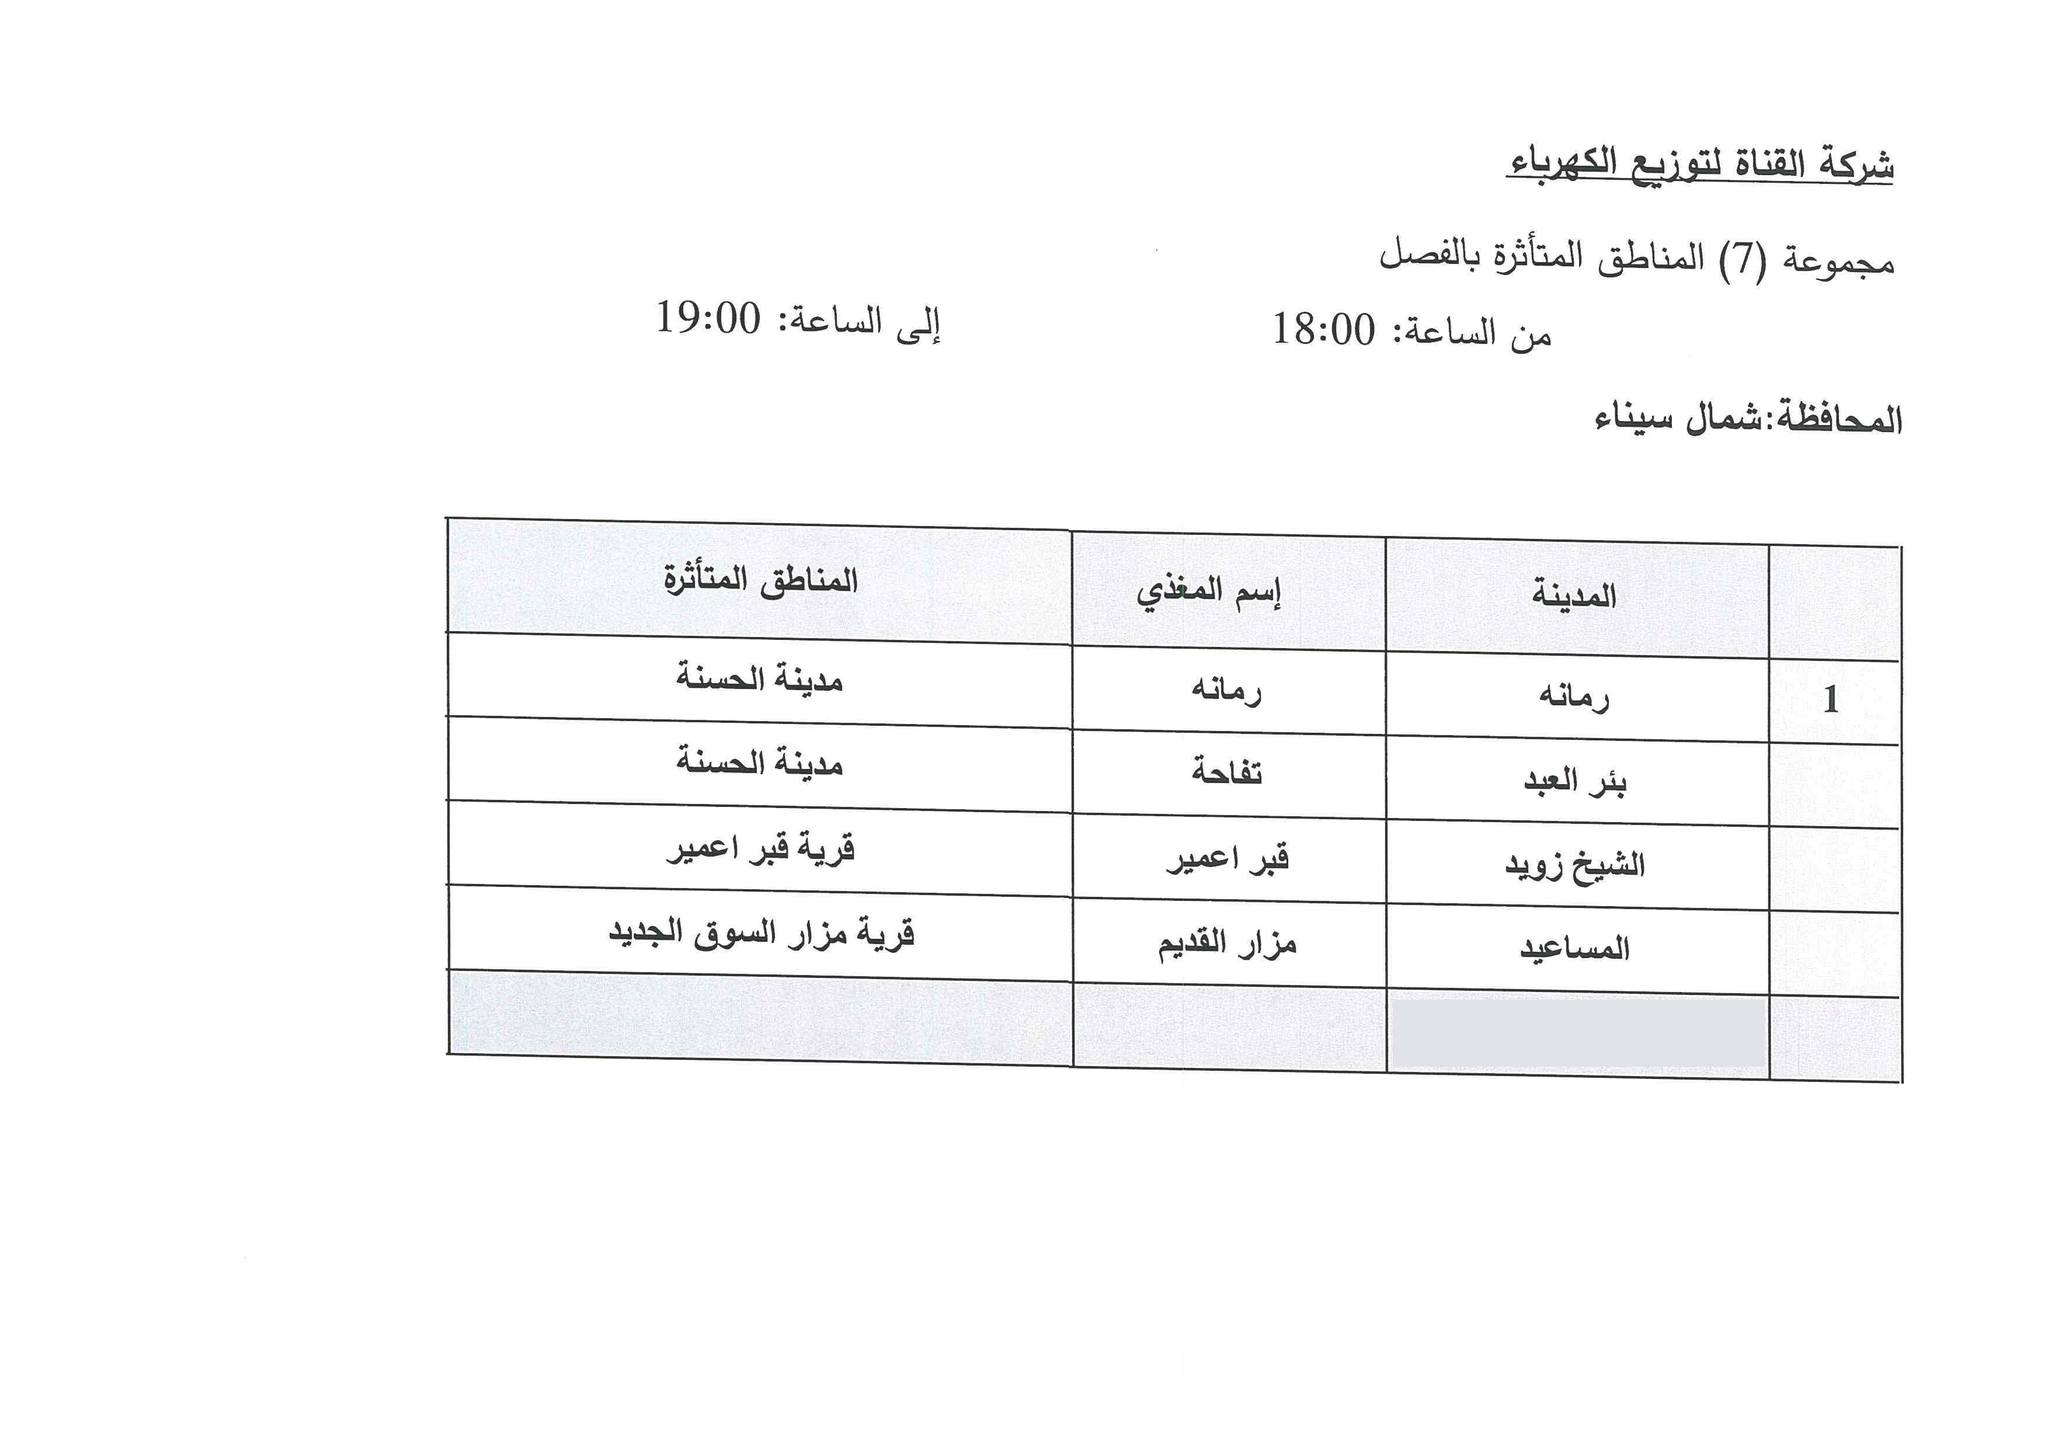 جدول مواعيد تخفيف الأحمال الكهربائية فى محافظة شمال سيناء (10)